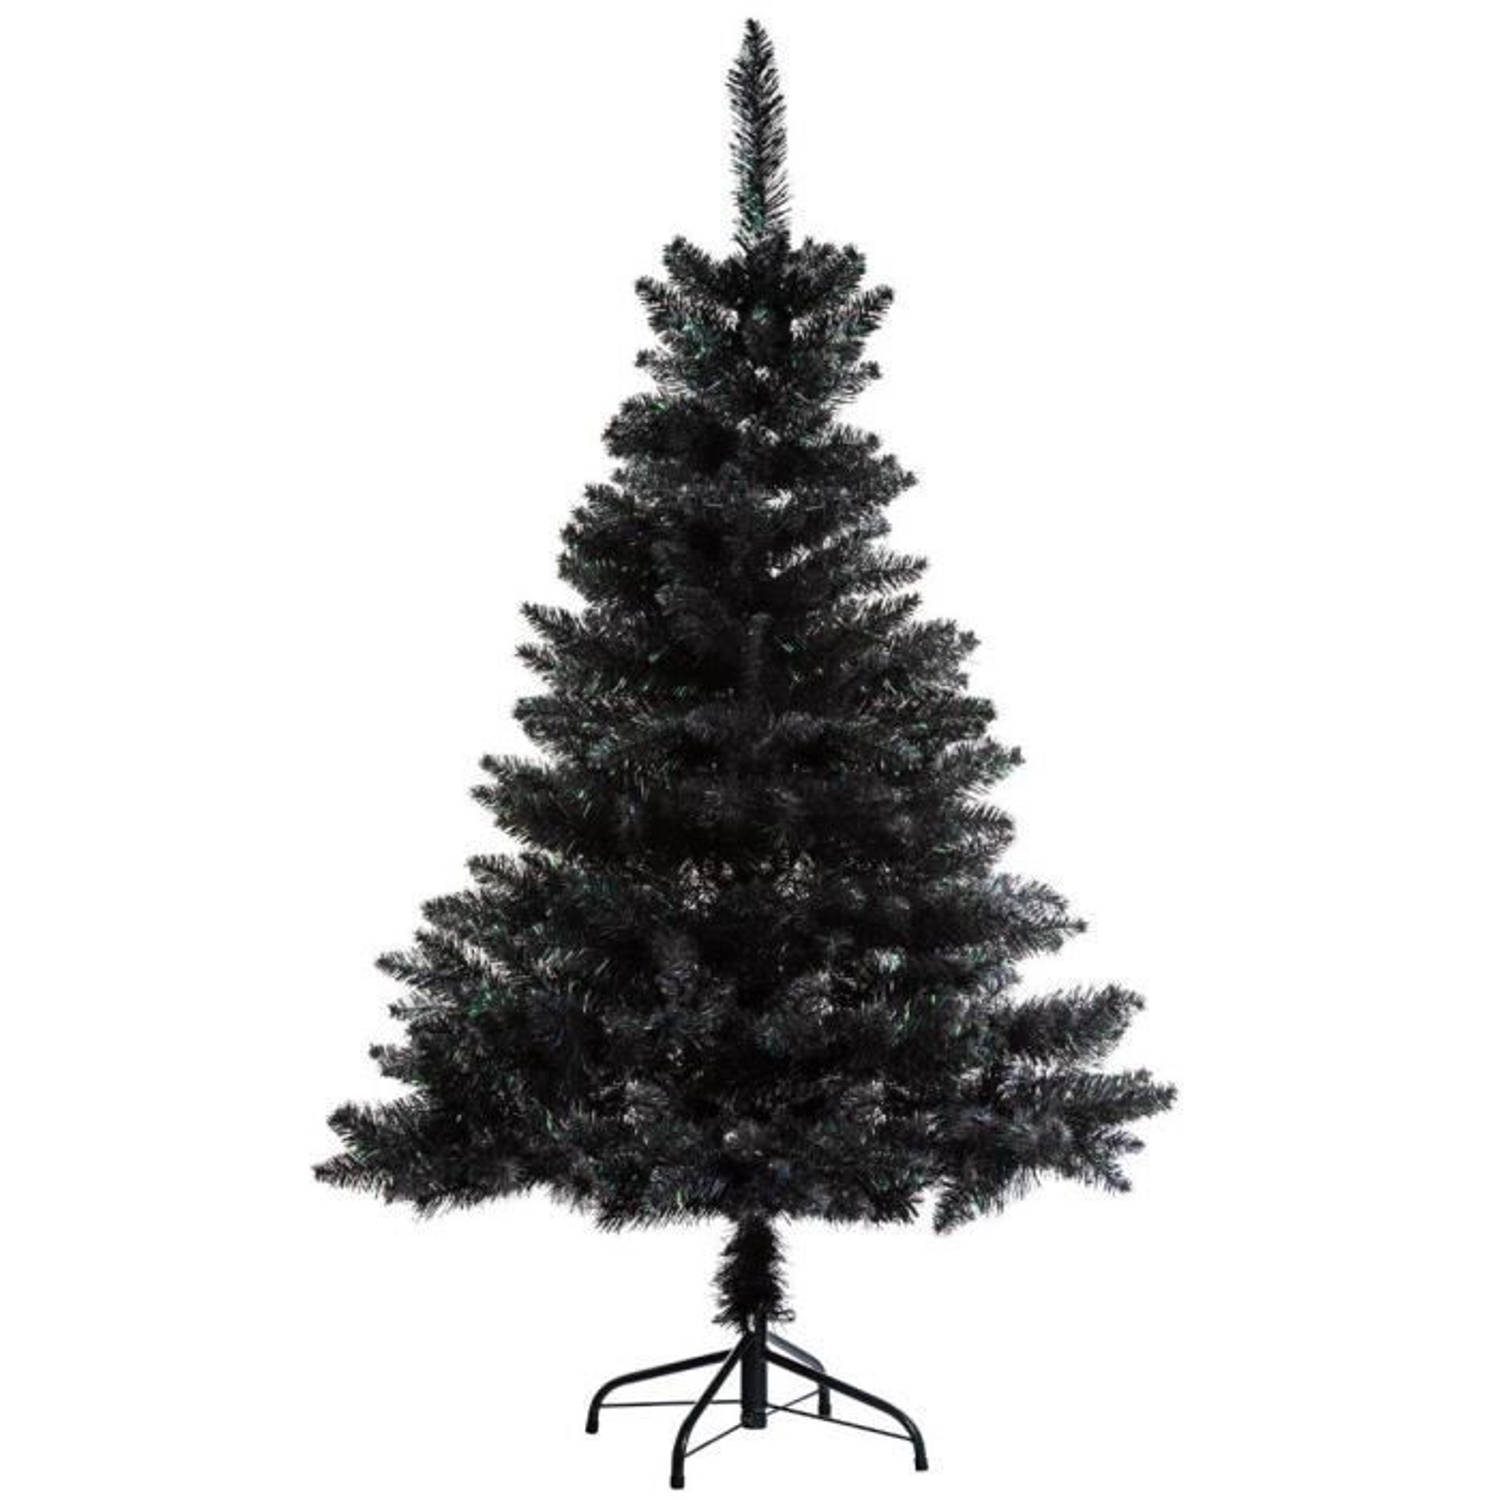 Kunst kerstboom/kunstboom - zwart - kunststof - met voet - H150 cm - Kunstkerstboom